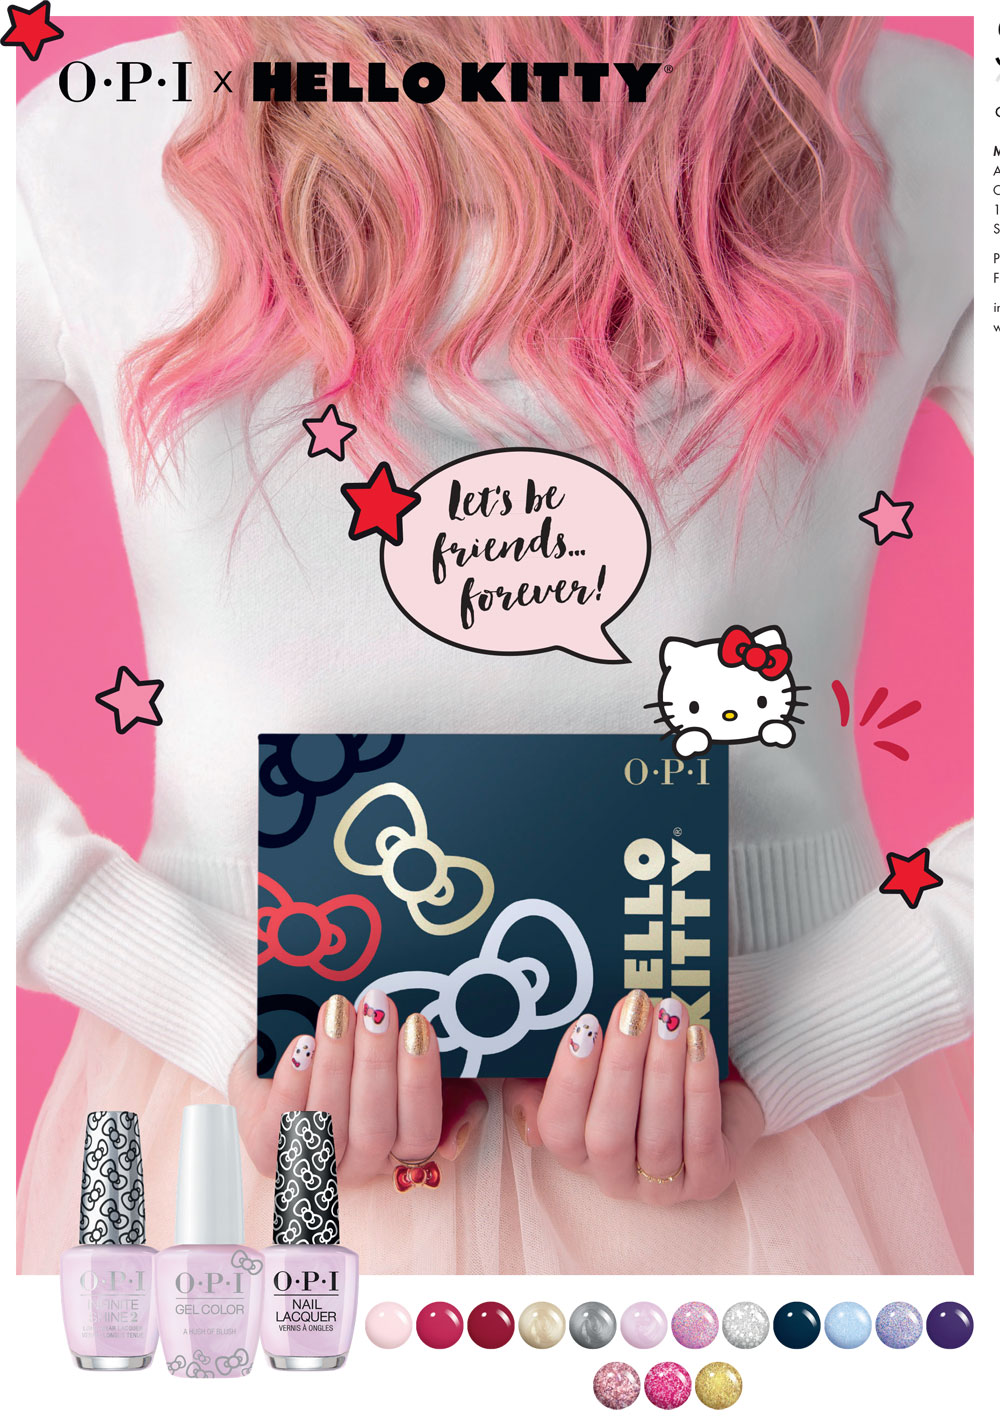 Let's be friends: Aufgrund grosser Nachfrage gibt es eine Neuauflage der beliebten Nagellack-Kollektion Hello Kitty by OPI.